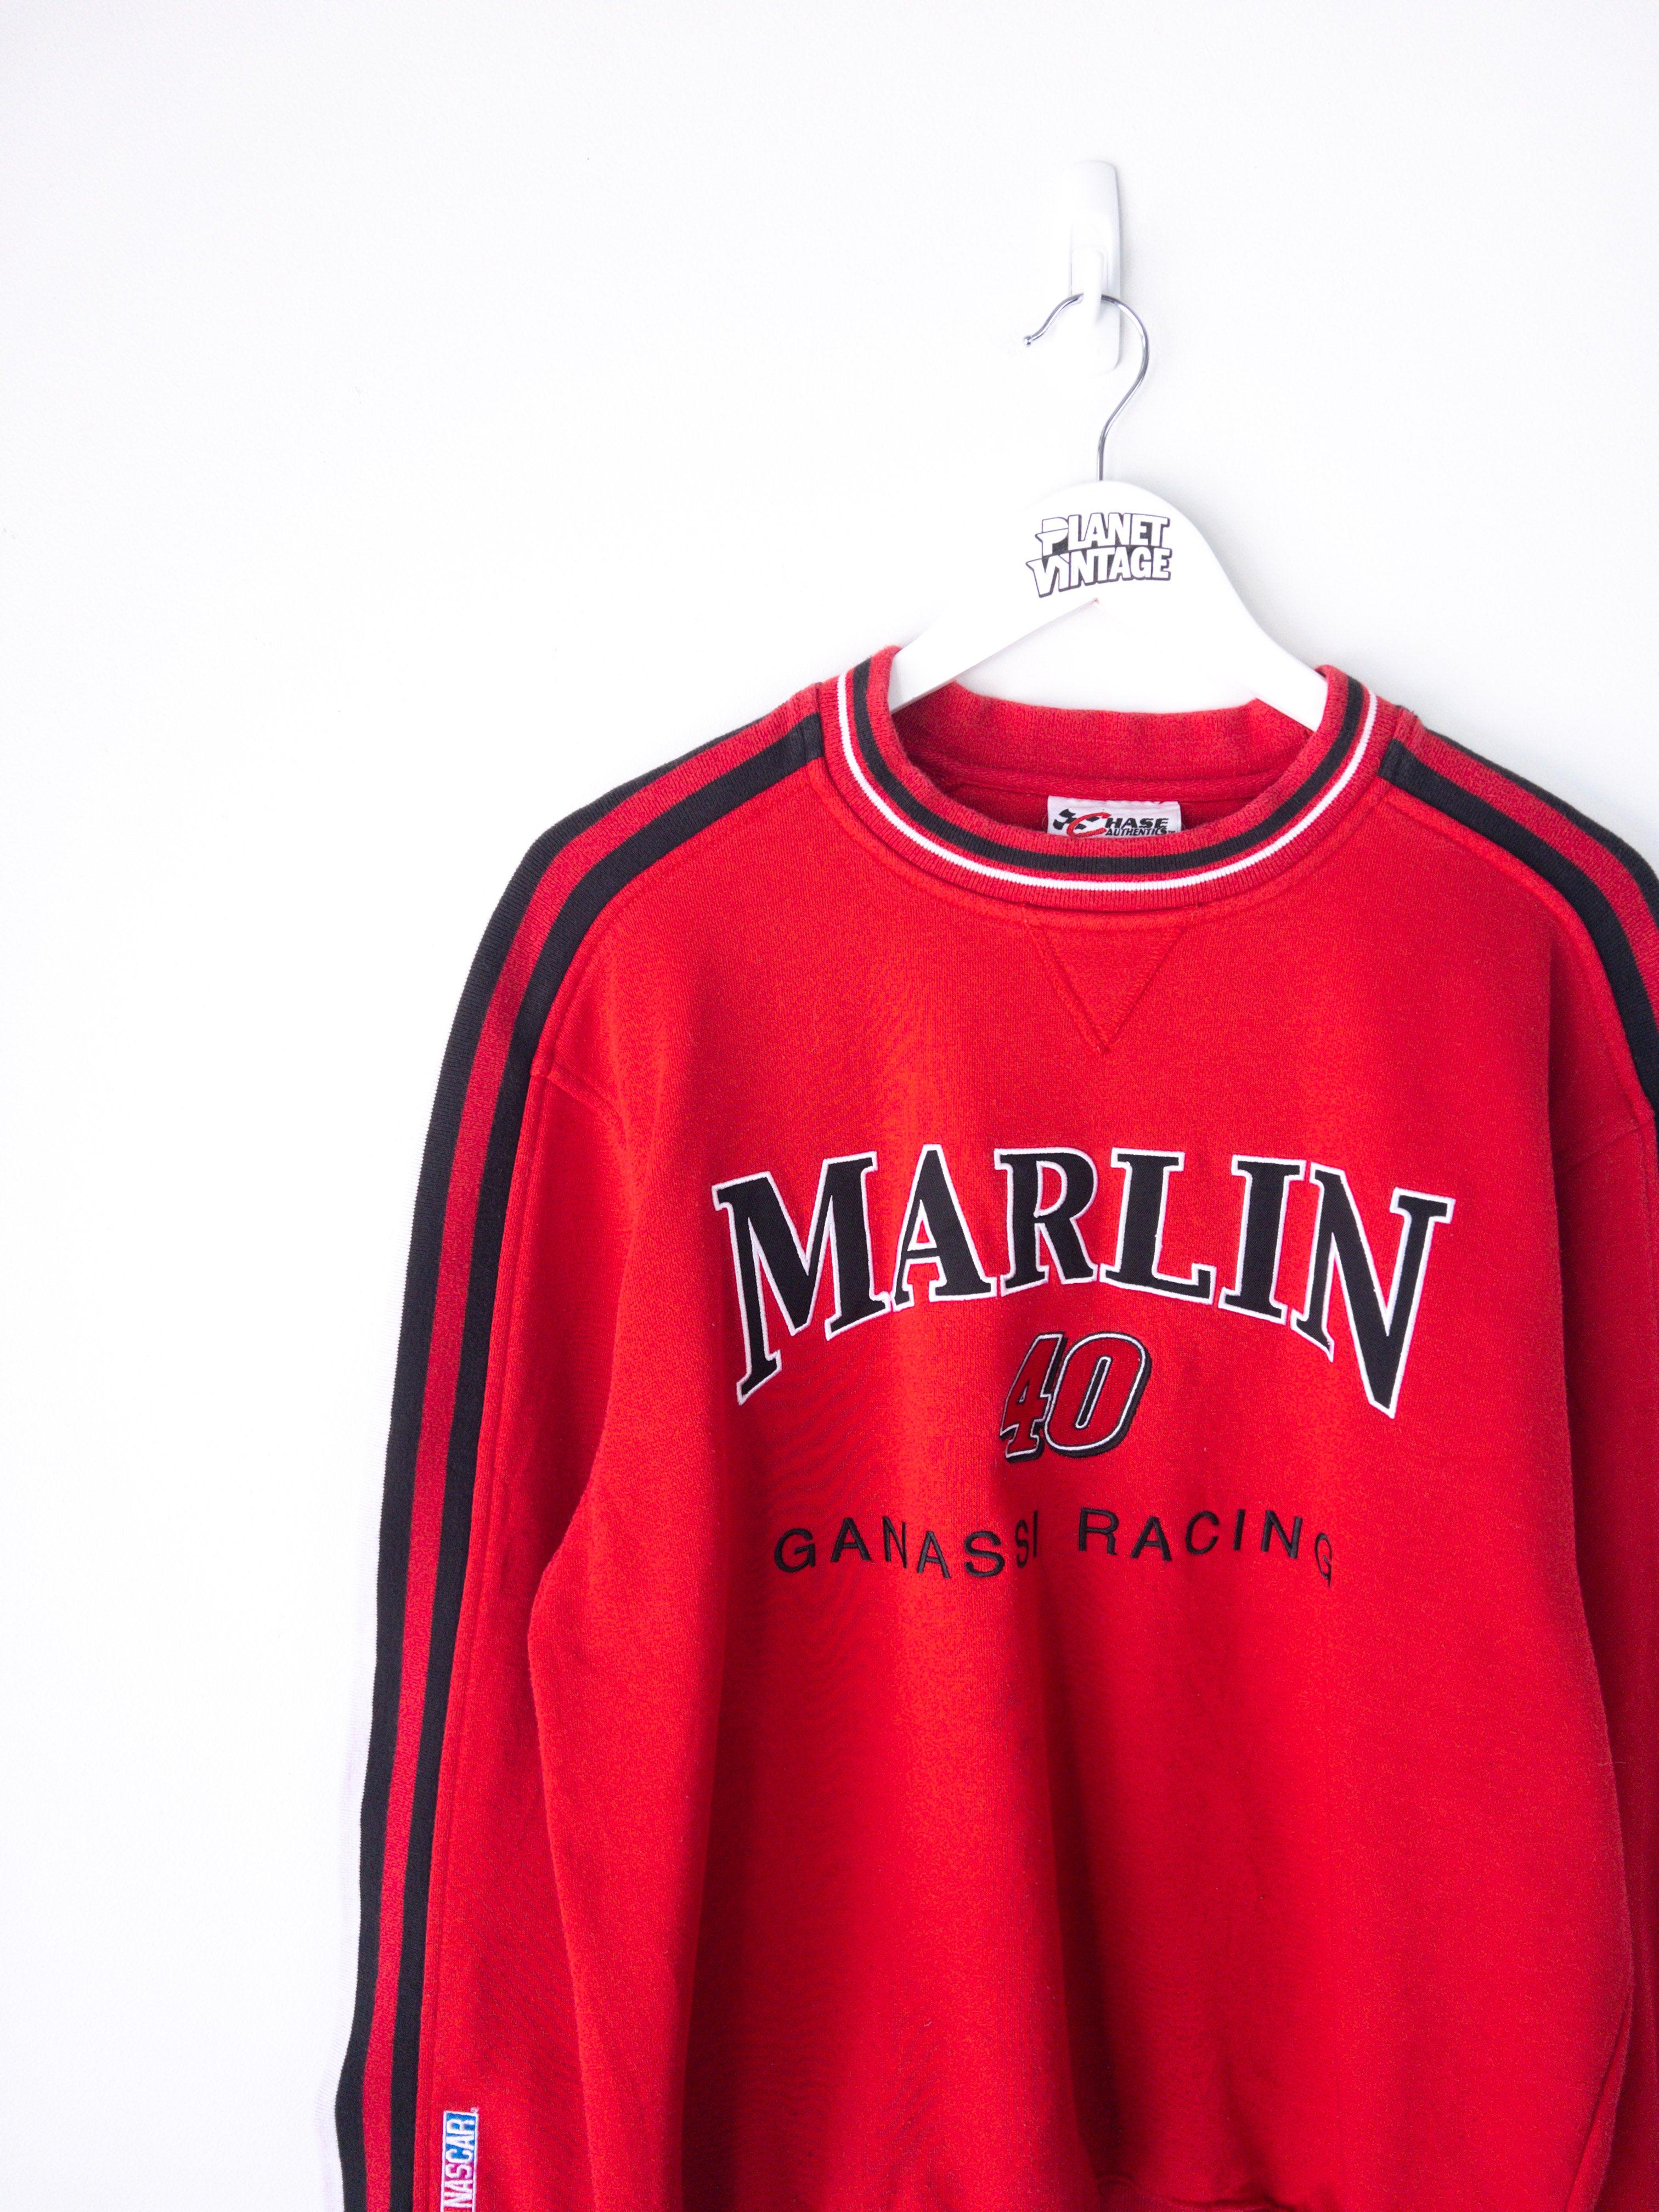 Vintage Sterling Marlin Ganassi Racing Sweatshirt (L)